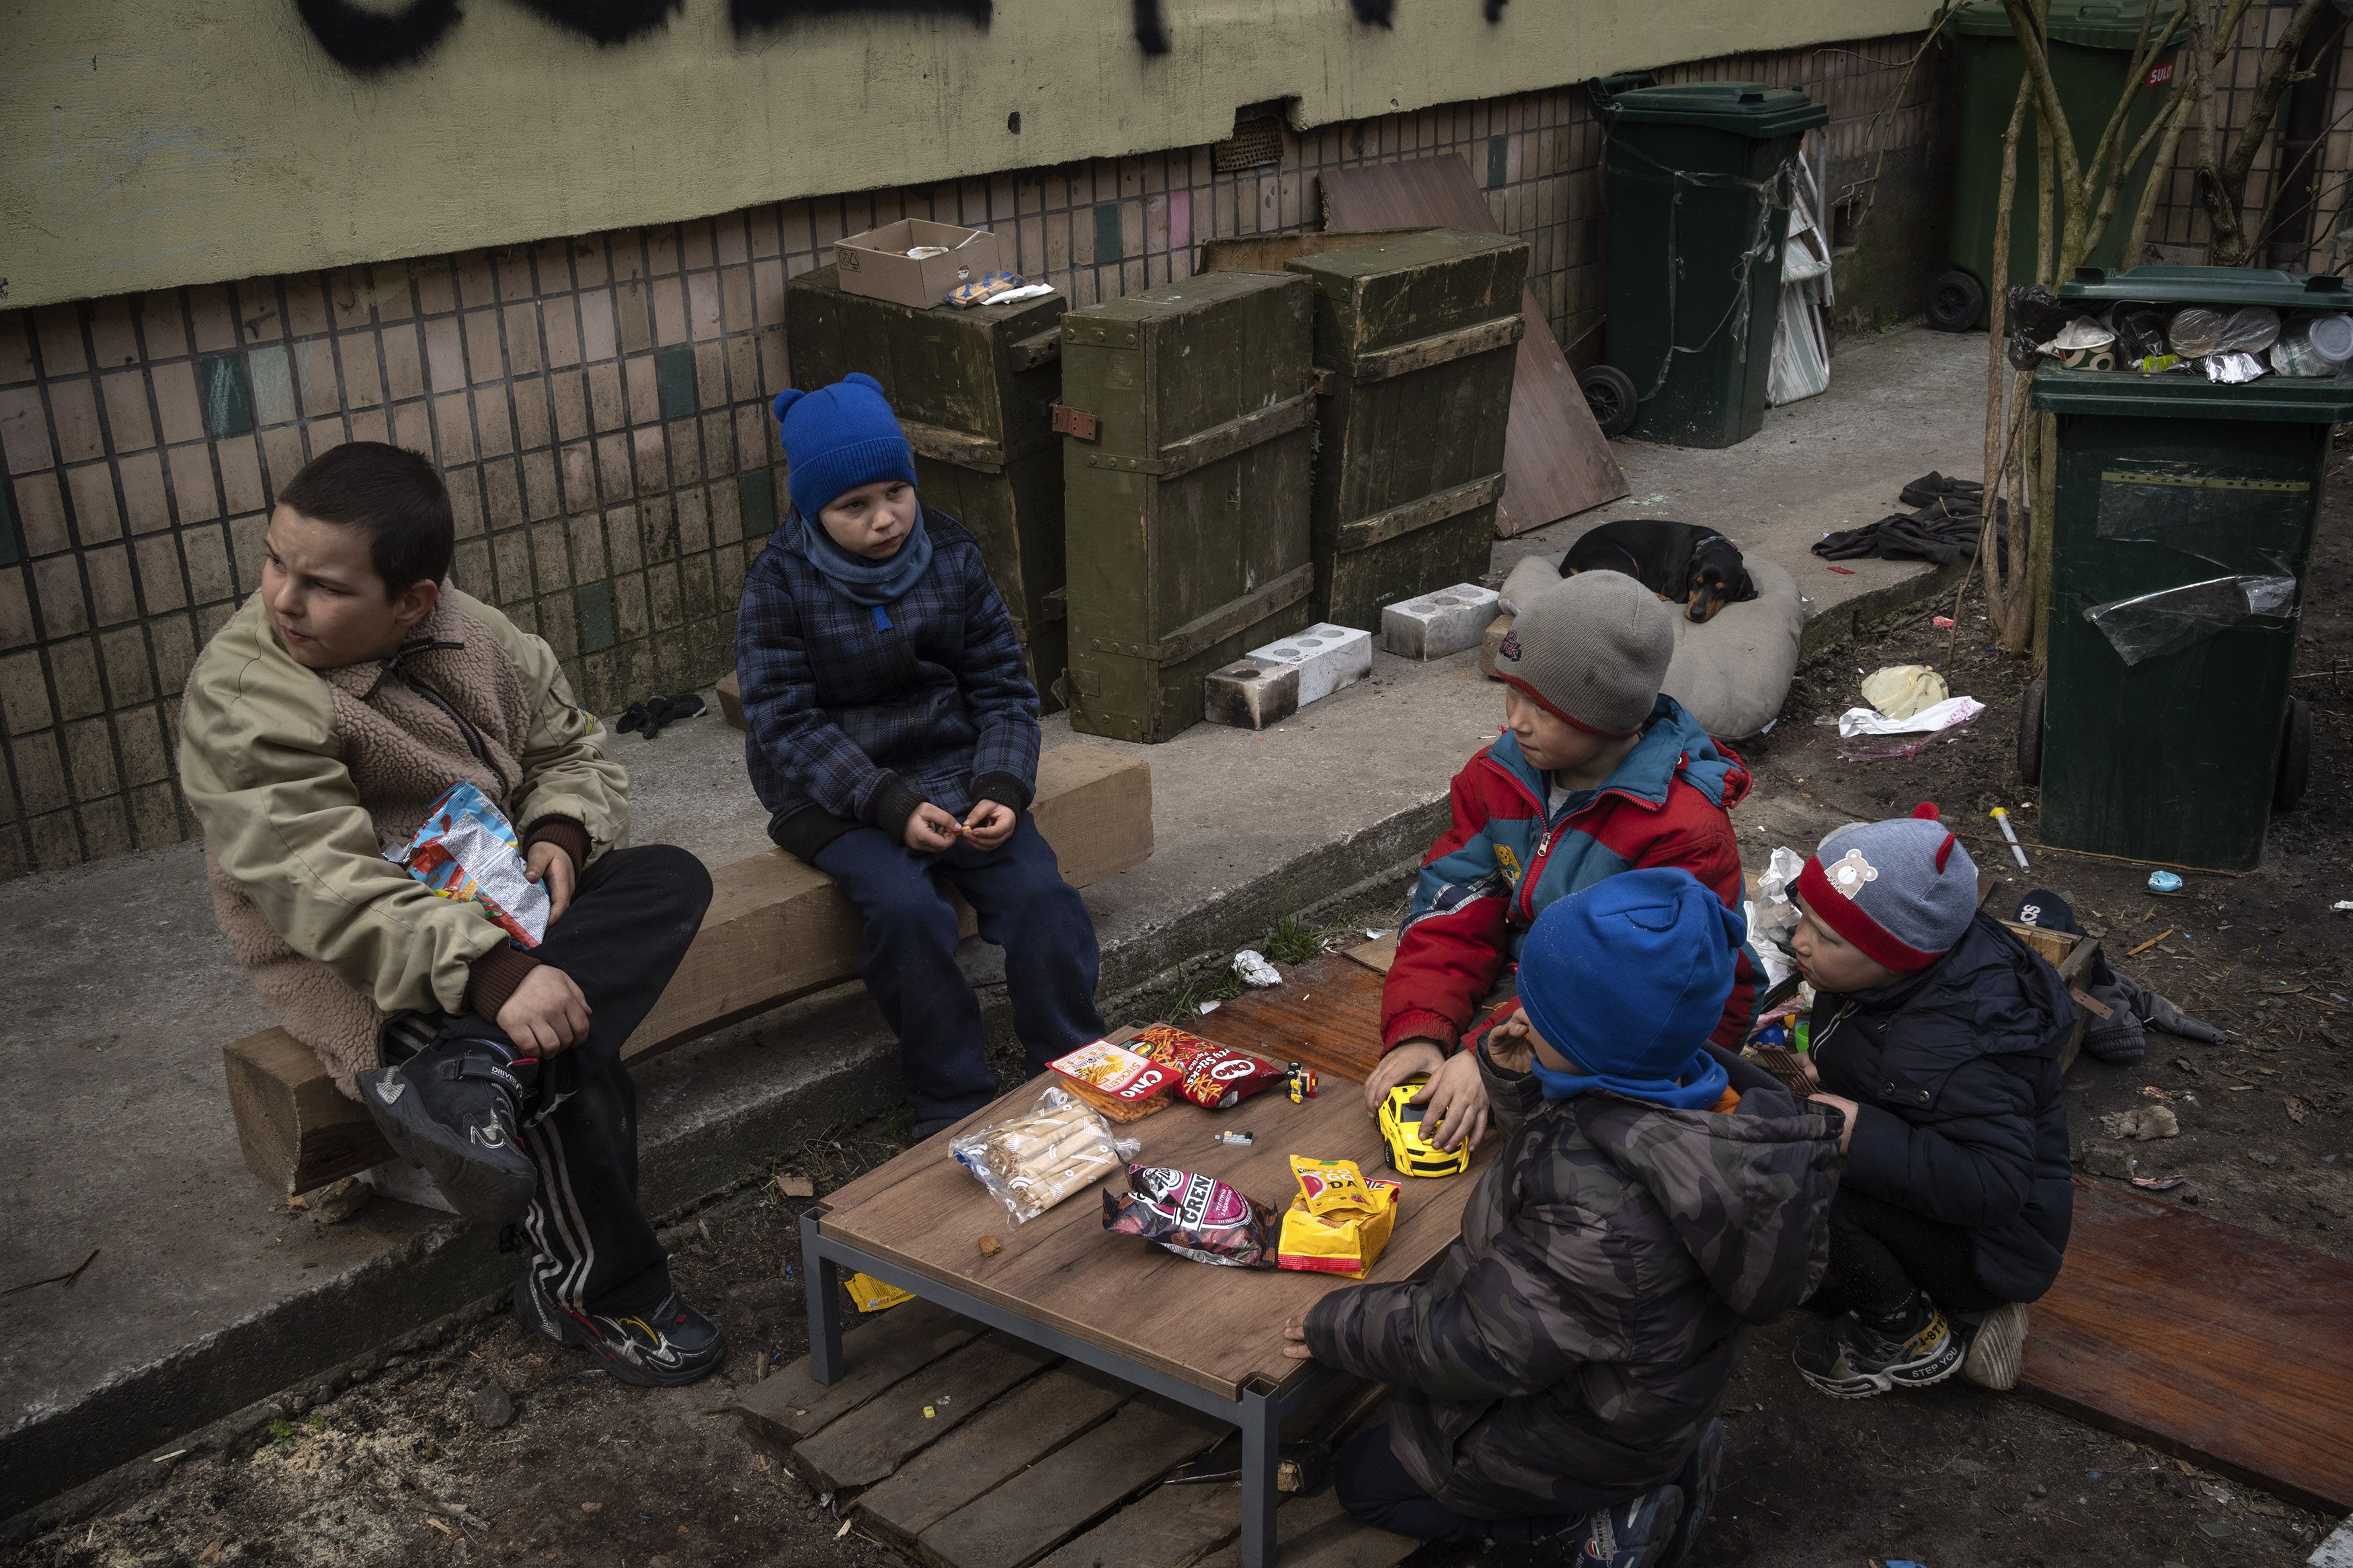 Niños sentados en torno a una mesa pequeña con comida que recibieron en un reparto de comida gratuita en Bucha, a las afueras de Kiev, Ucrania, el viernes 8 de abril de 2022. Un graffiti escrito por los vecinos en la pared al fondo dice "Niños" para informar al ejército ruso de que muchos niños viven en el edificio. (AP Foto/Rodrigo Abd)